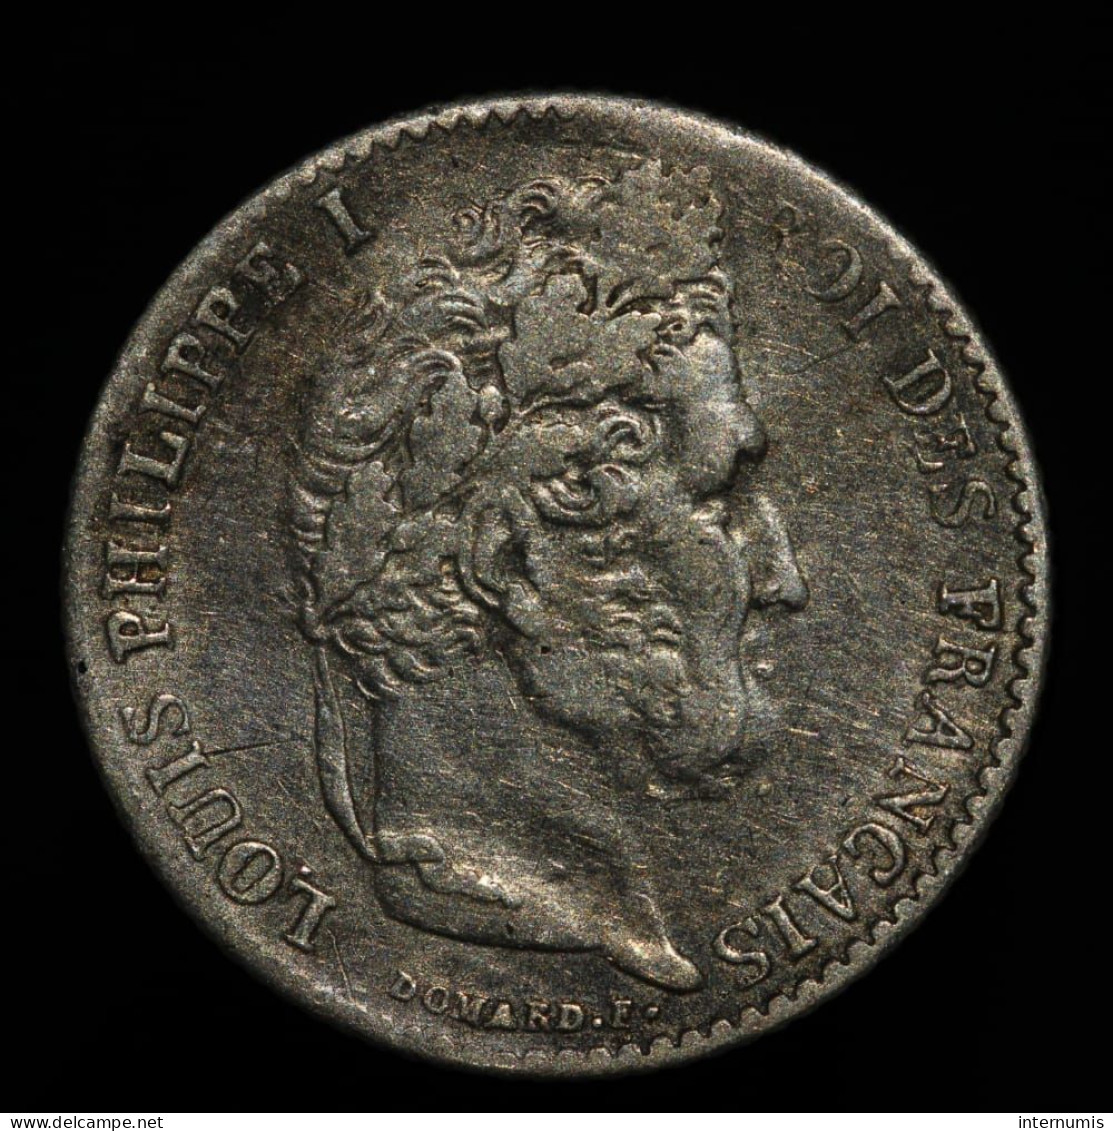 France, Louis-Philippe, 1/4 Franc, 1838, A - Paris, Argent (Silver), TTB (EF), KM#740.1, G.355, F.166/69 - 1/4 Franc